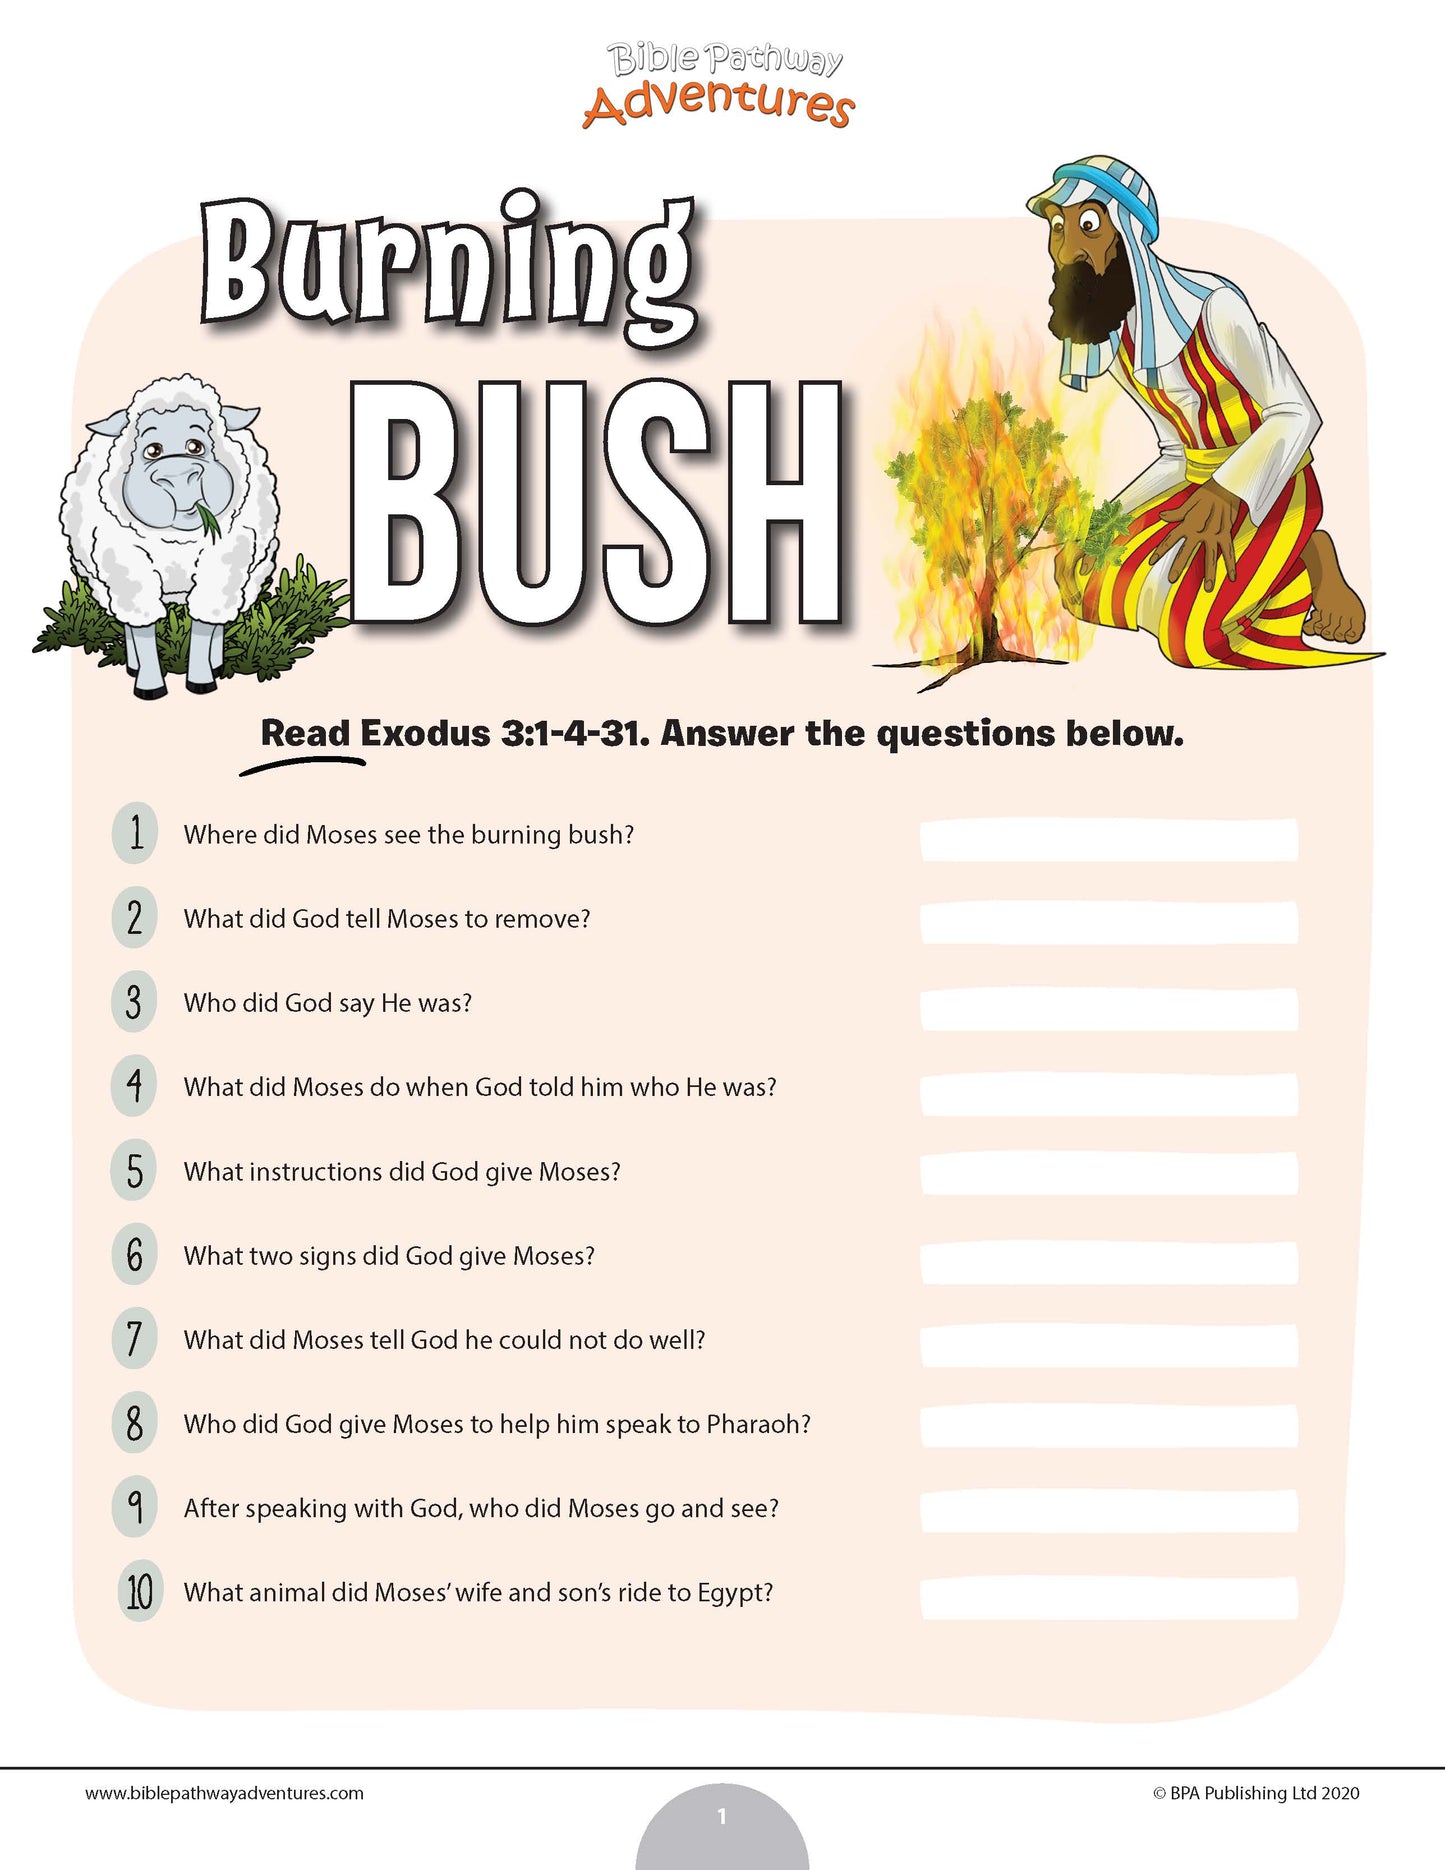 The Burning Bush quiz